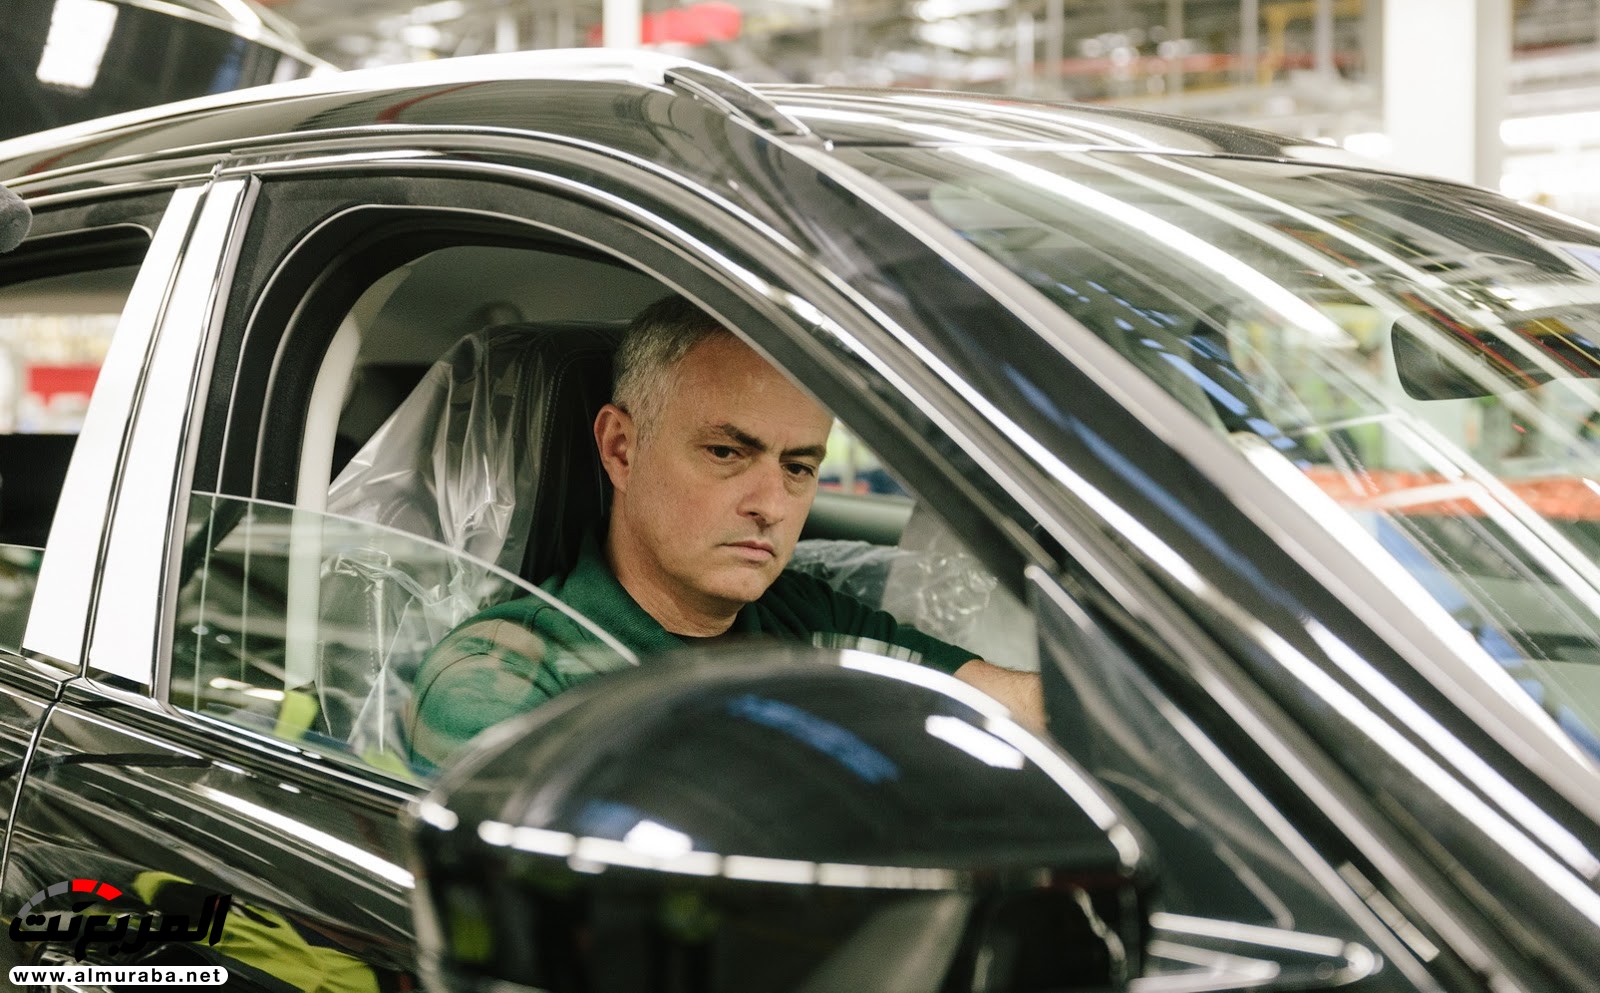 مدير مانشستر يونايتد يمضي يوما في بناء سيارة بمصنع جاكوار "فيديو وصور" 44